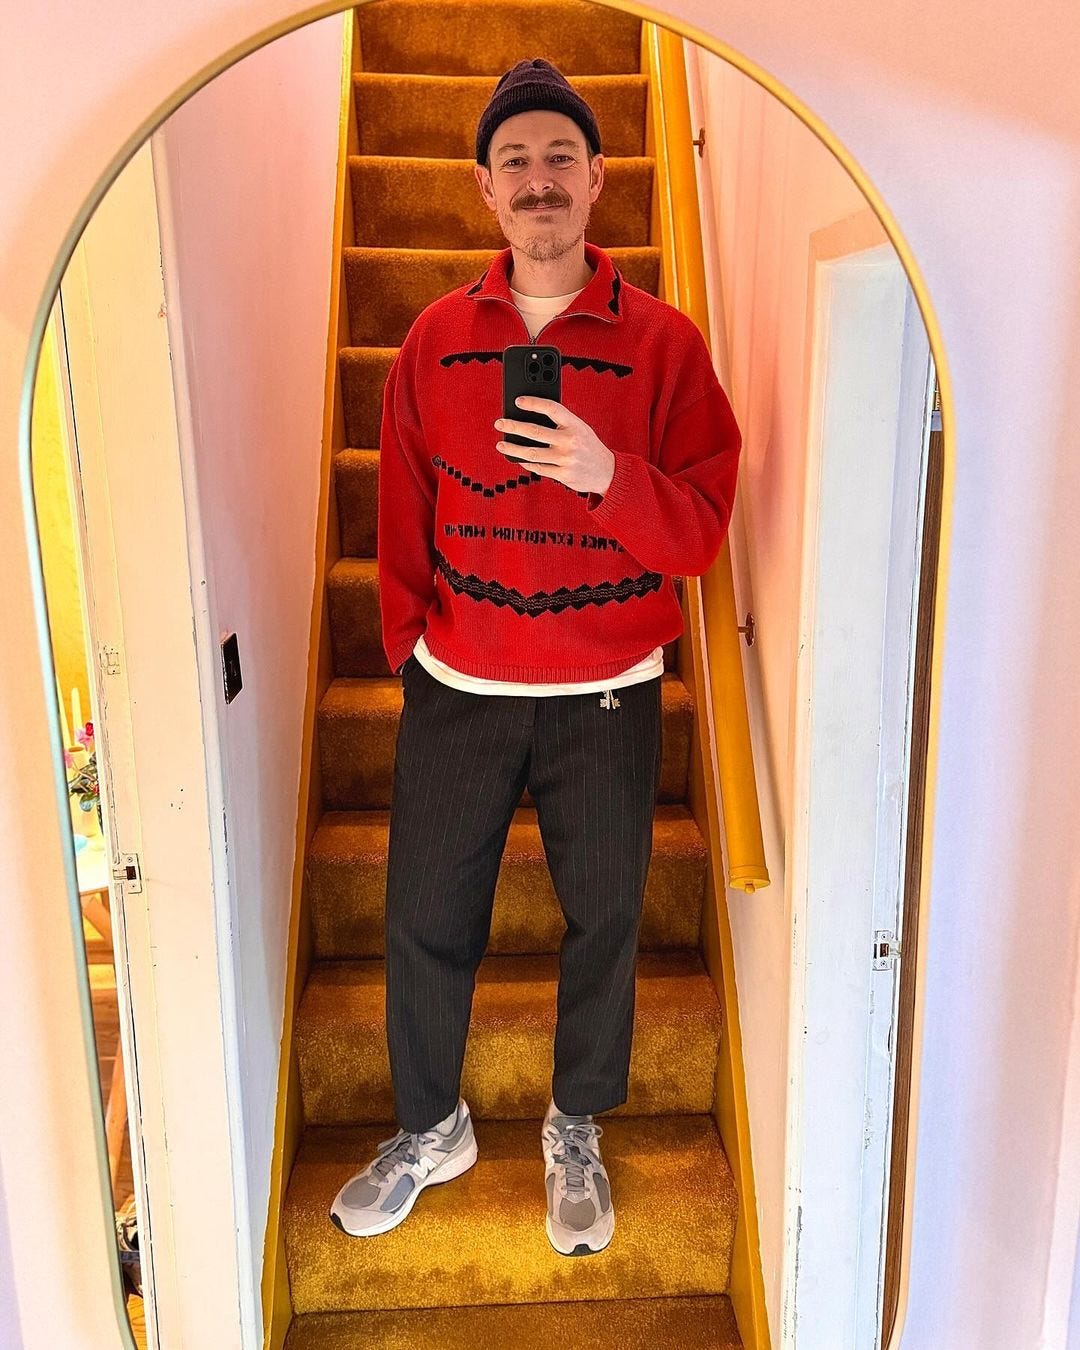 instagram men's style influencer wears_oli wearing a red sweater